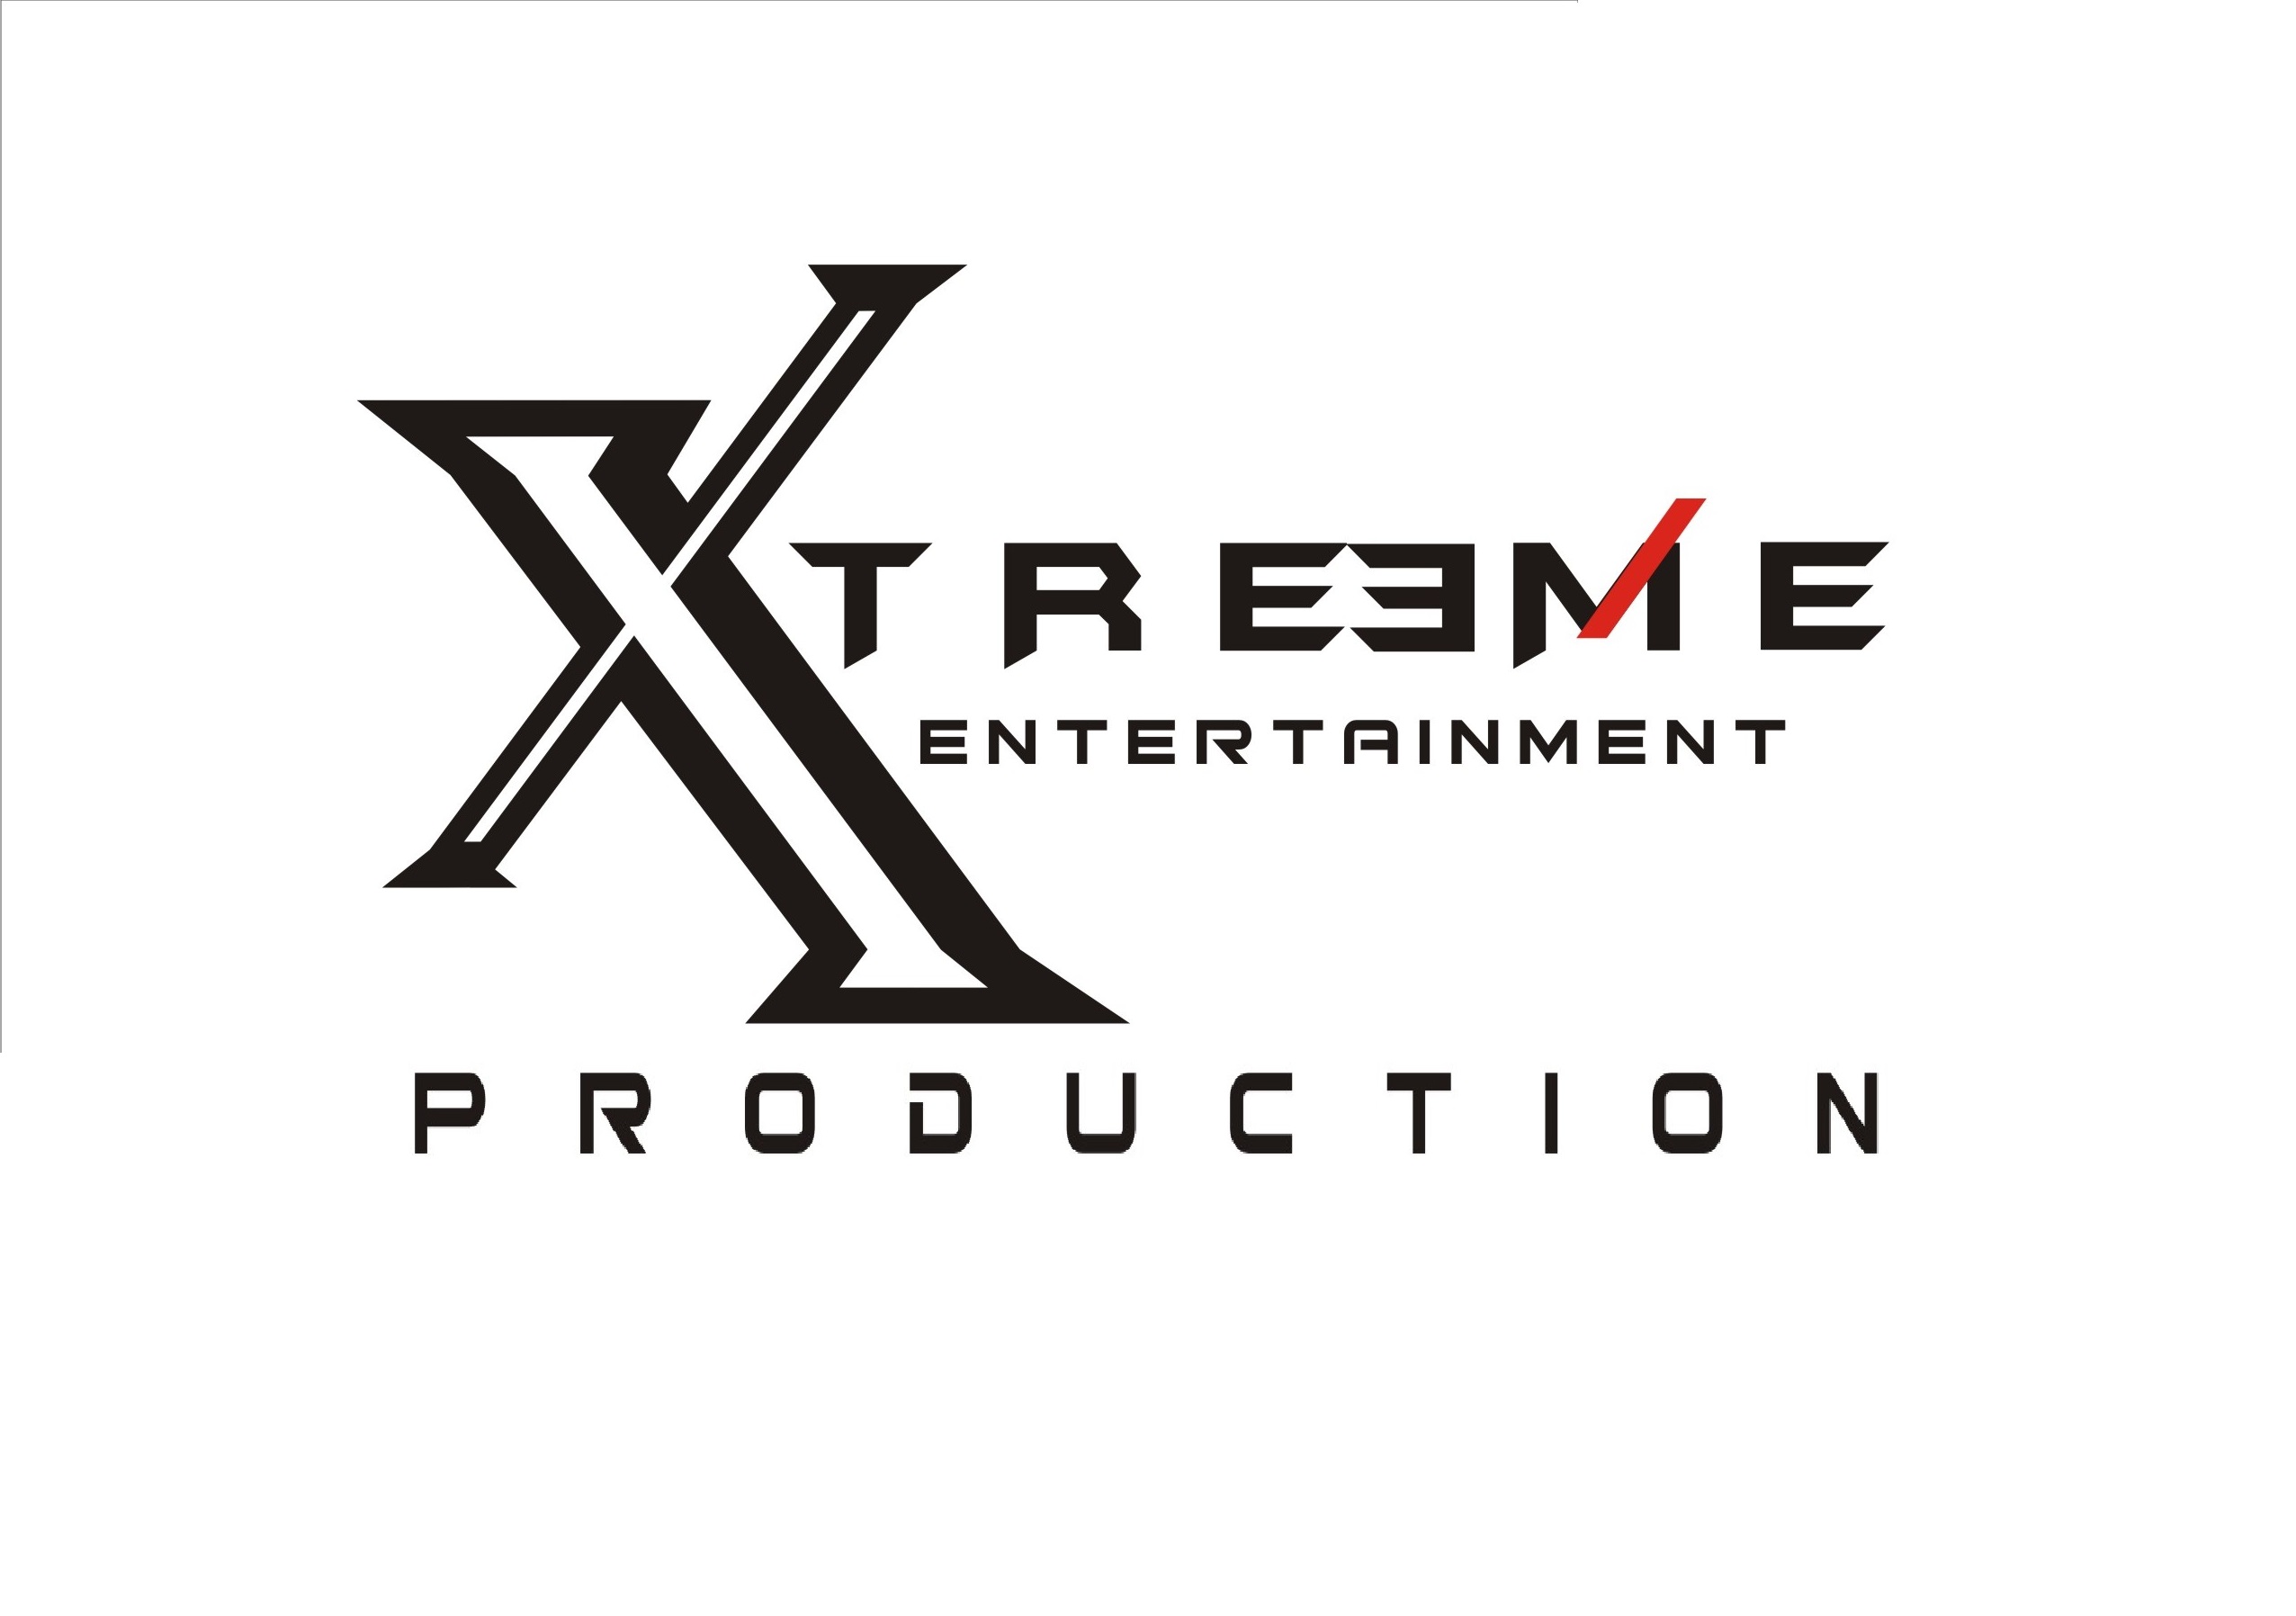 new xterme logo